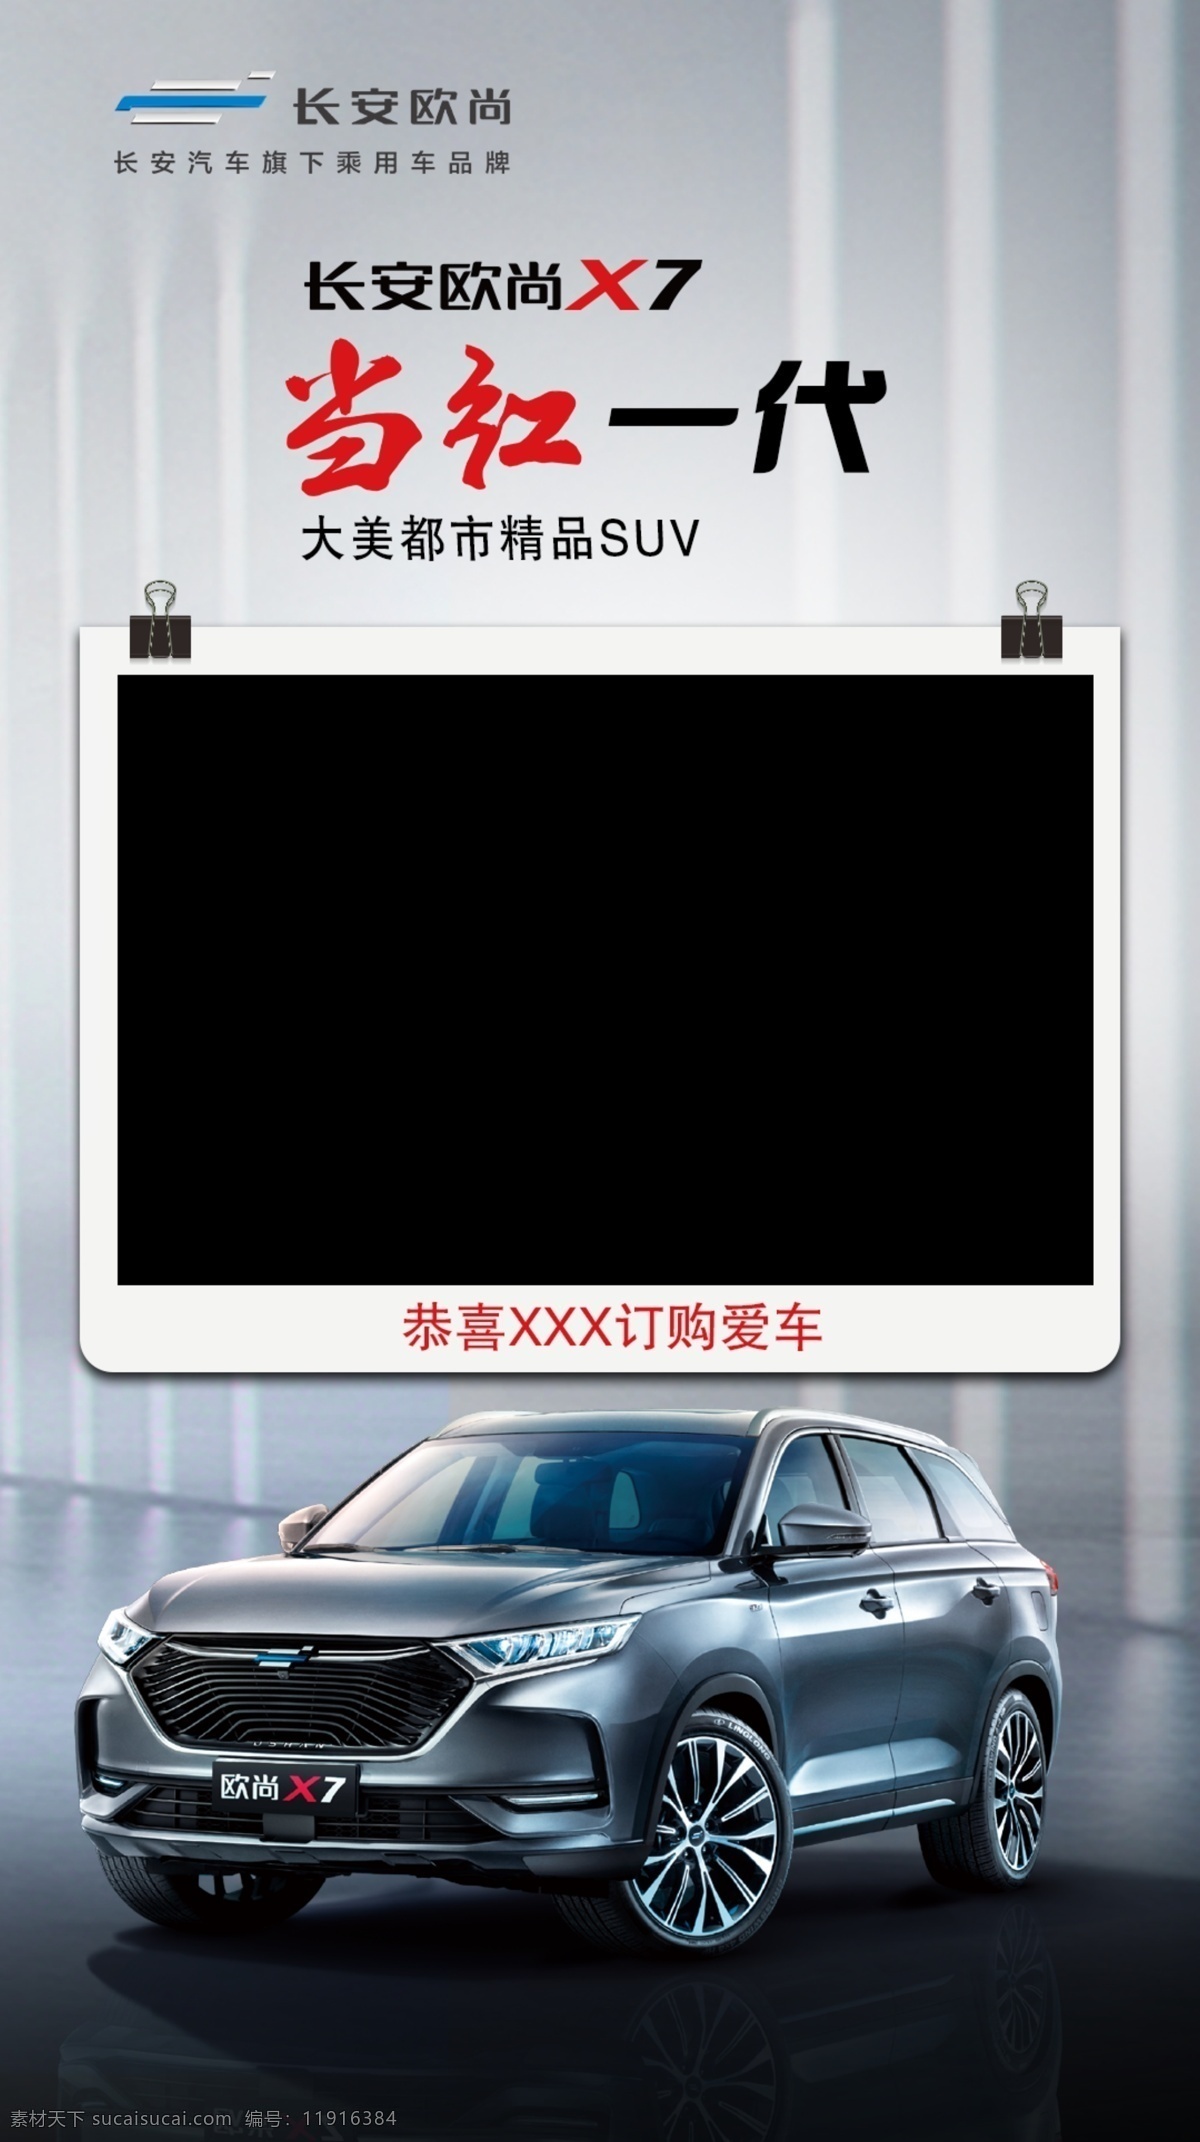 交车模板 汽车 交车 模板 欧尚 x7 长安 原创广告设计 分层